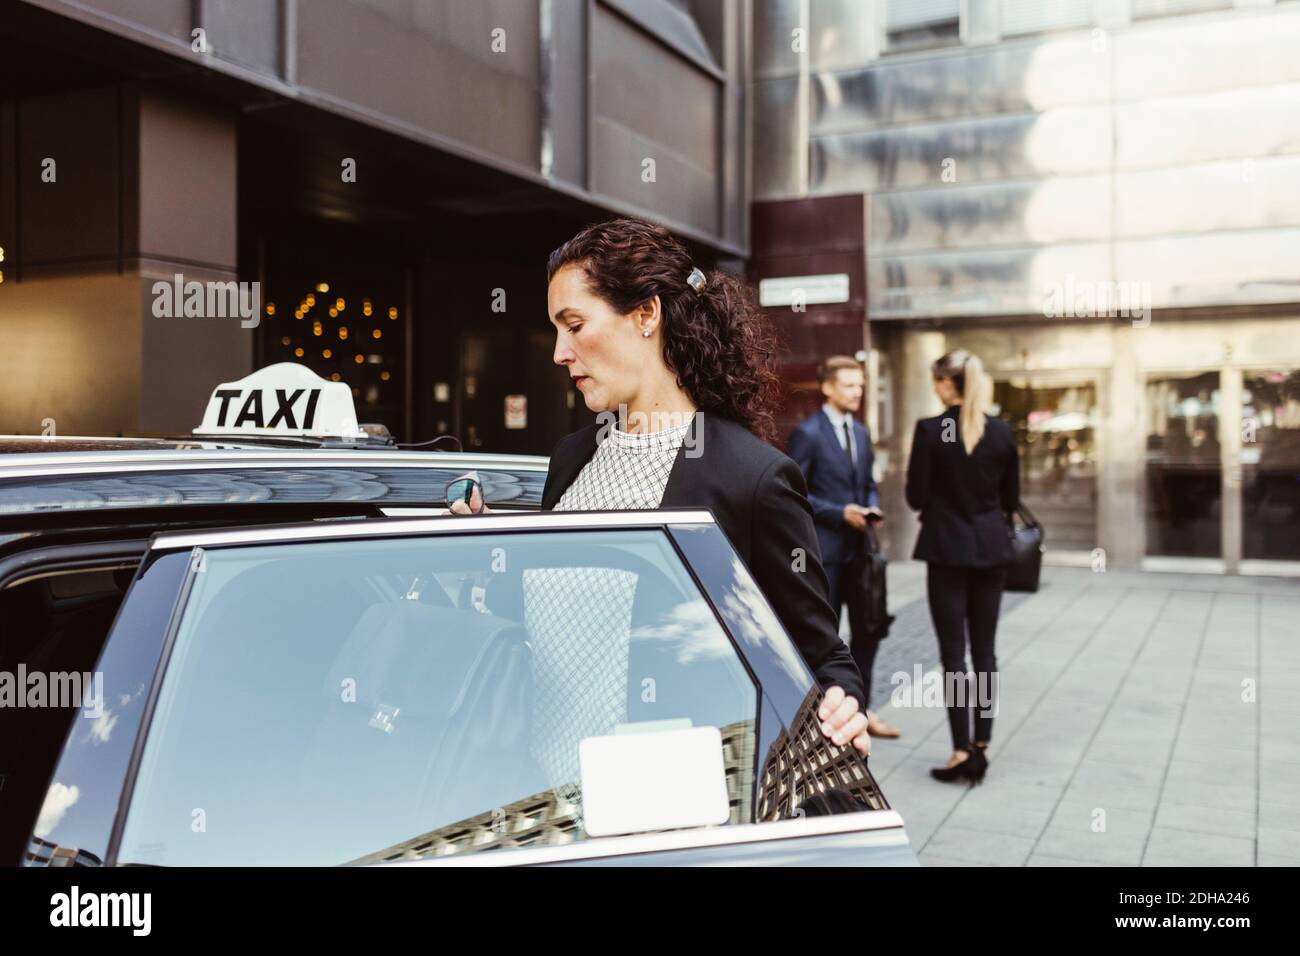 Weibliche Unternehmerin in Taxi eingeben, während Mitarbeiter im Hintergrund stehen Stockfoto